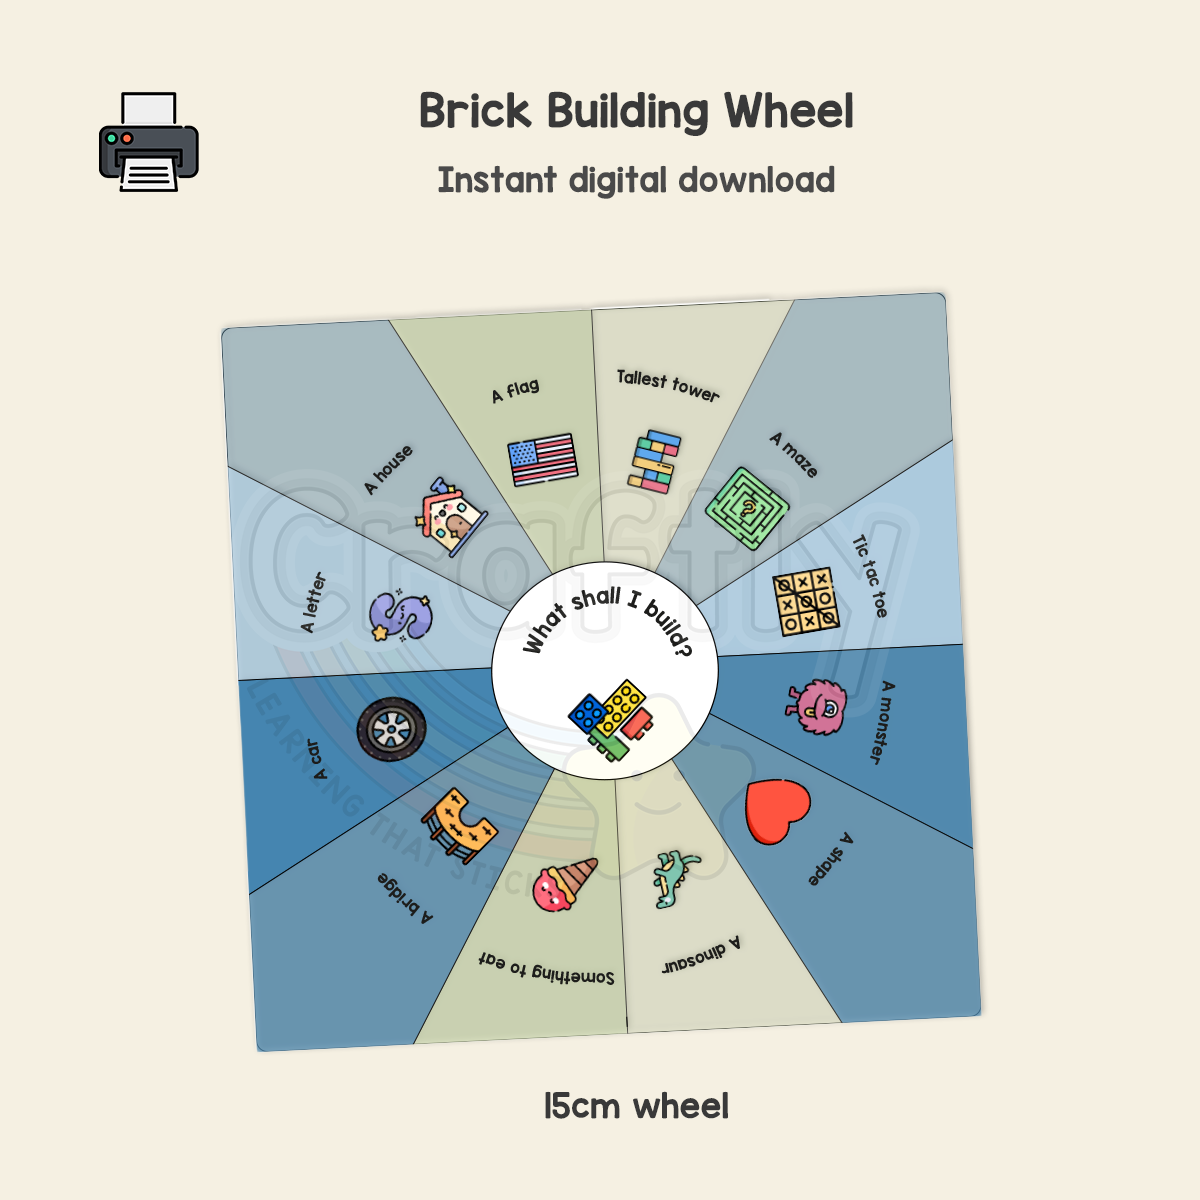 Brick Building Wheel